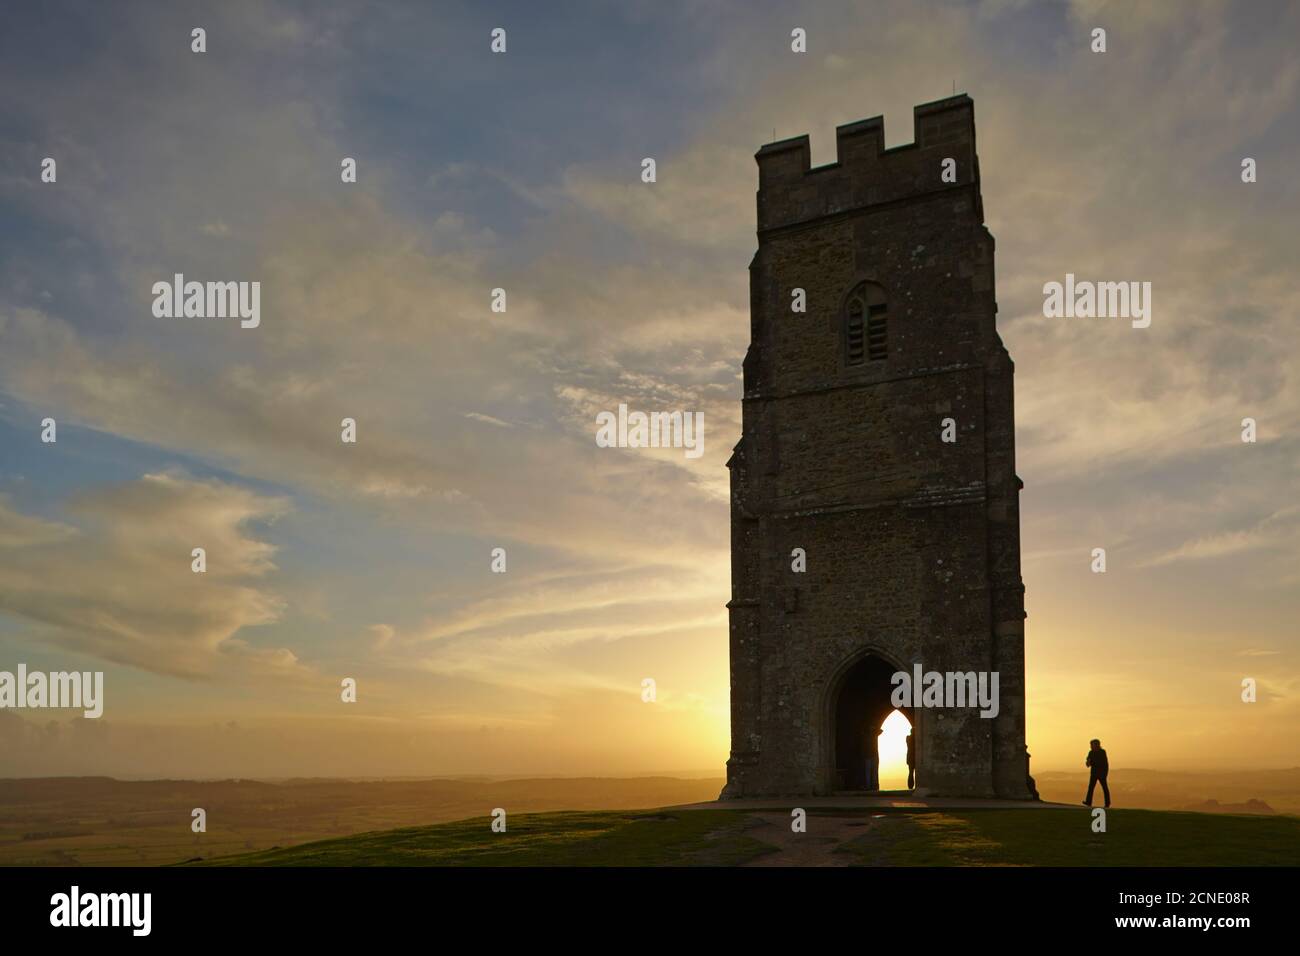 La tour Saint-Michel a été silhouettée au coucher du soleil, sur le sommet de Glastonbury Tor, Glastonbury, Somerset, Angleterre, Royaume-Uni, Europe Banque D'Images